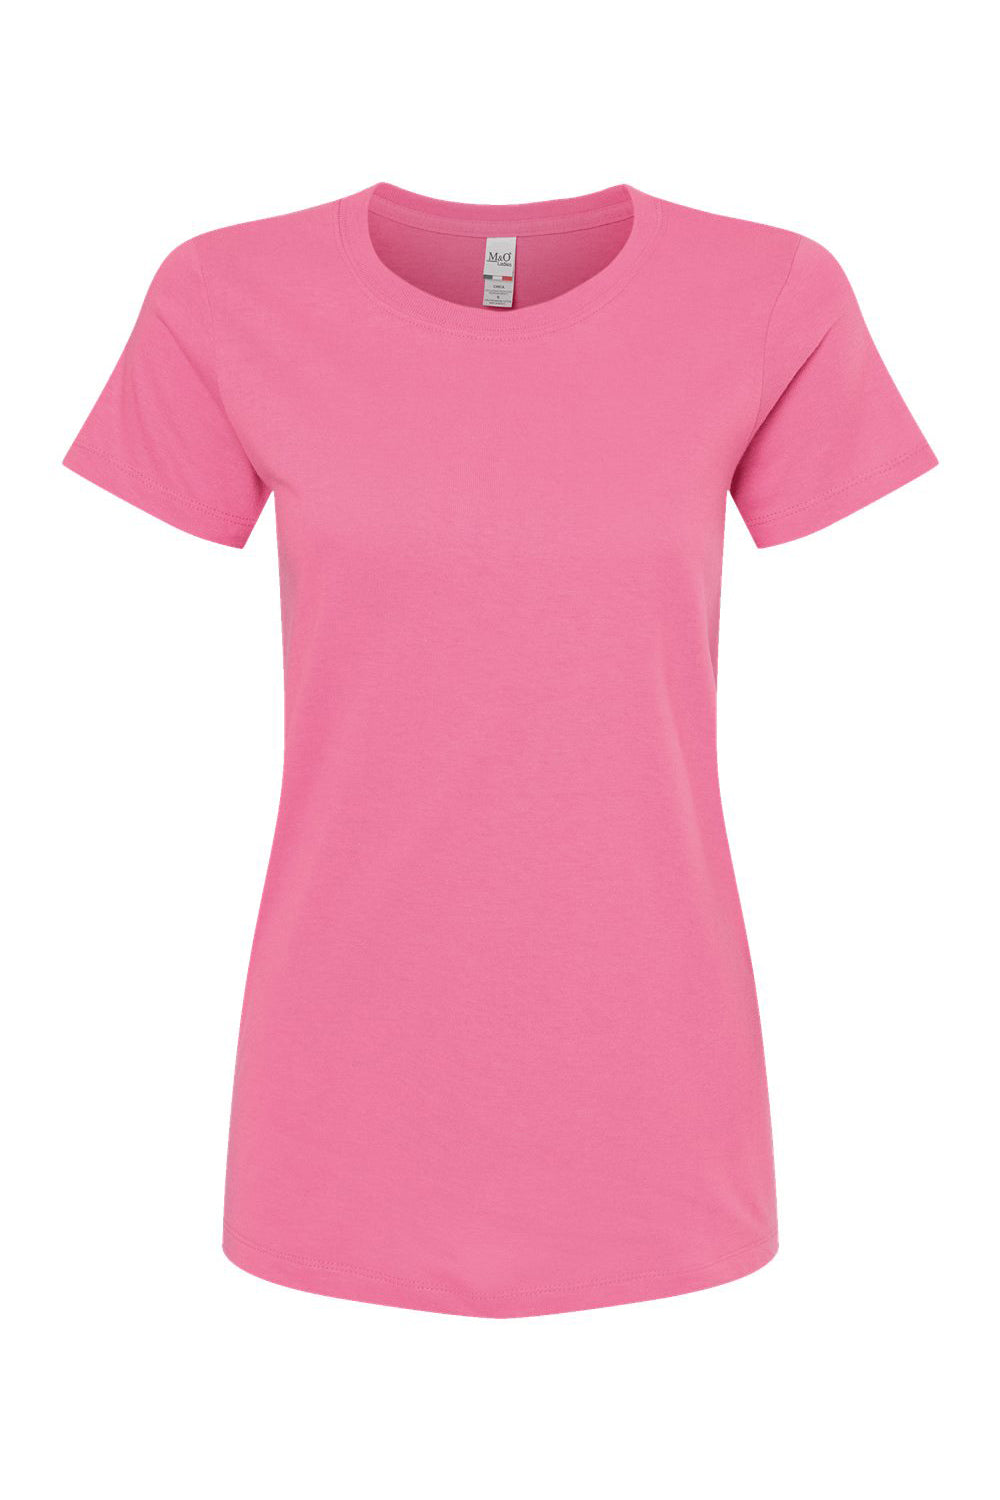 M&O 4810 Womens Gold Soft Touch Short Sleeve Crewneck T-Shirt Azalea Pink Flat Front